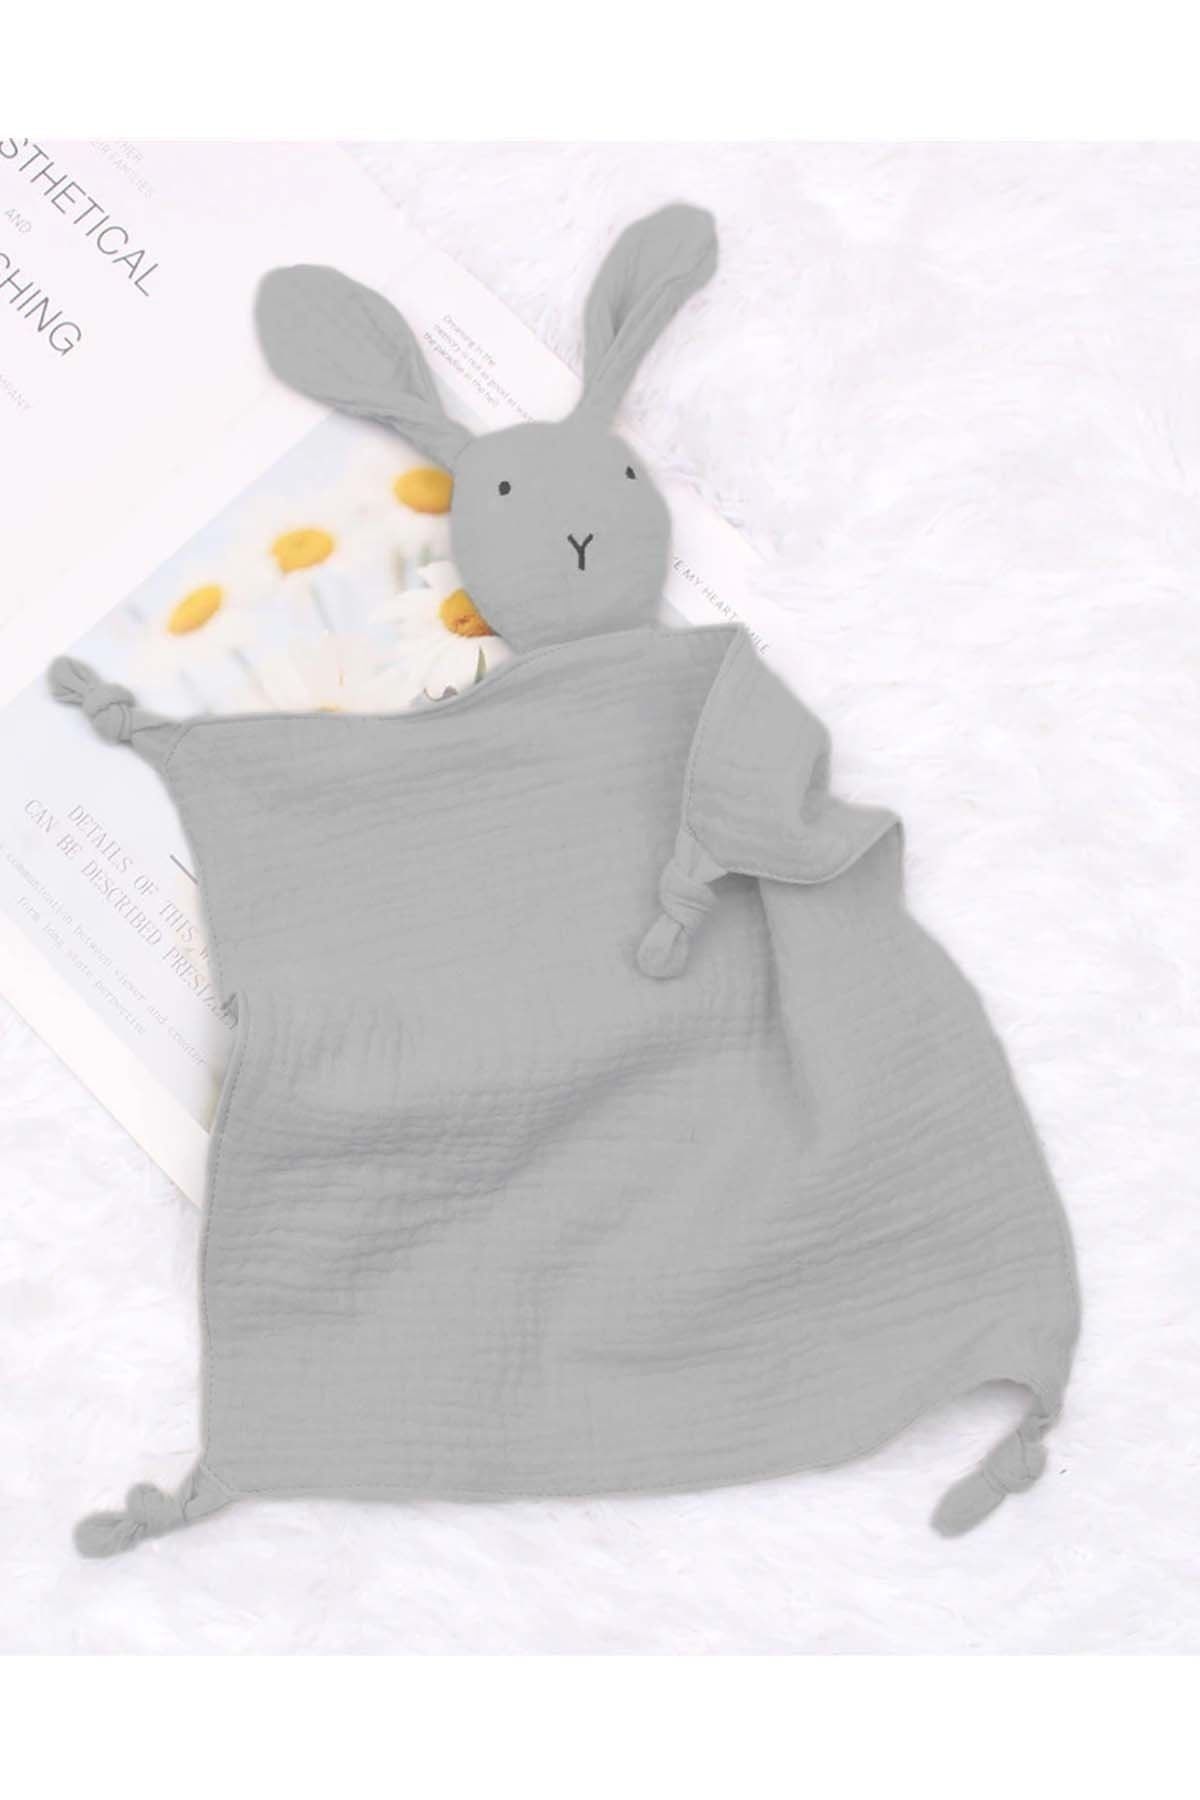 Modakids 4 Katlı Müslin Uyku Arkadaşı Tavşan Model Kız Erkek Bebek Beşik Yatak Uyku Oyuncak Aksesuarları